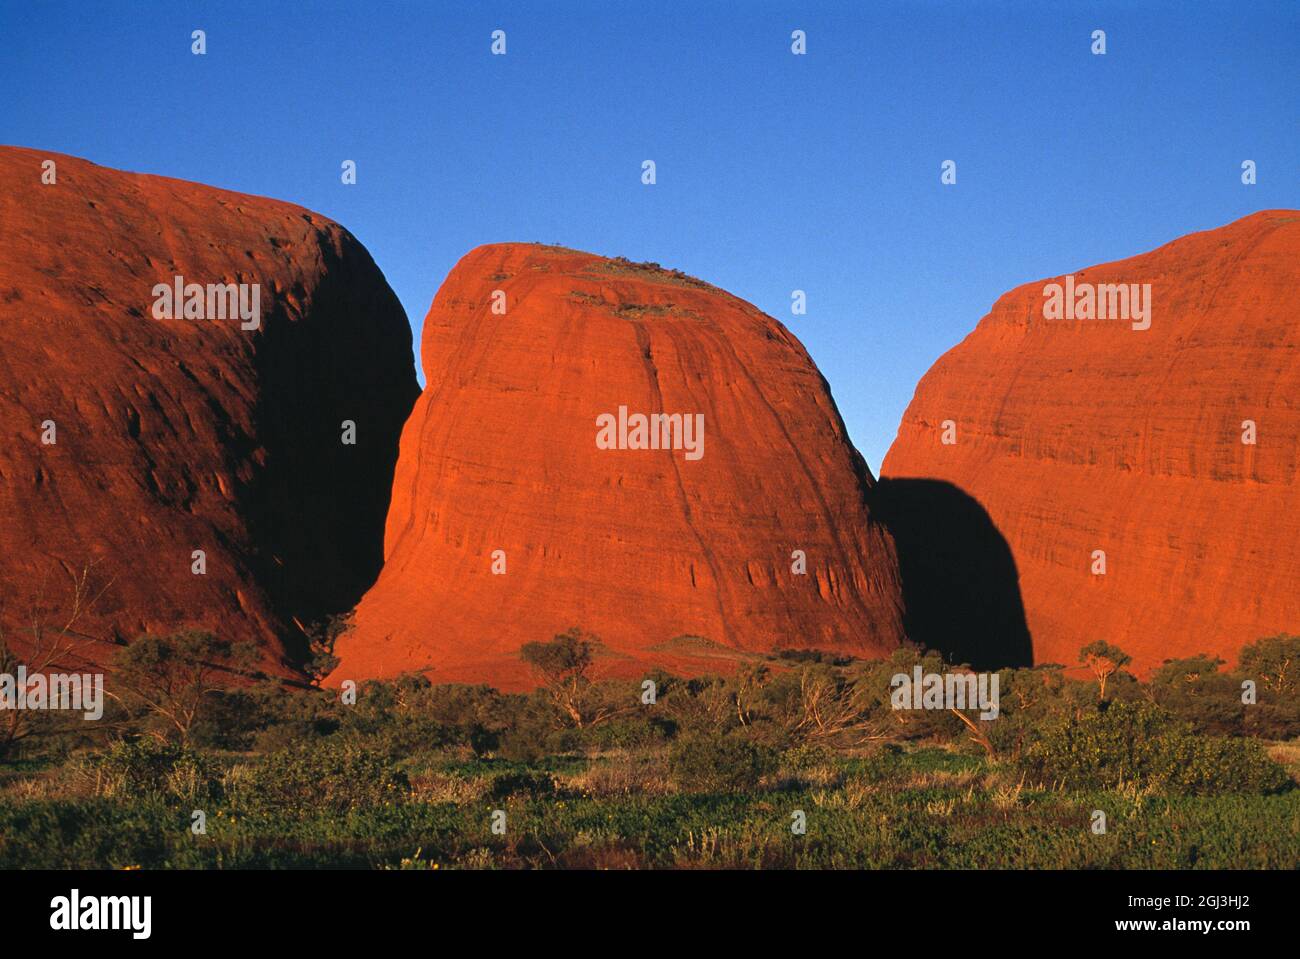 Australia. El Territorio del Norte. Región de Alice Springs. El Kata Tjuta (Monte Olga) (Las Olgas). Foto de stock